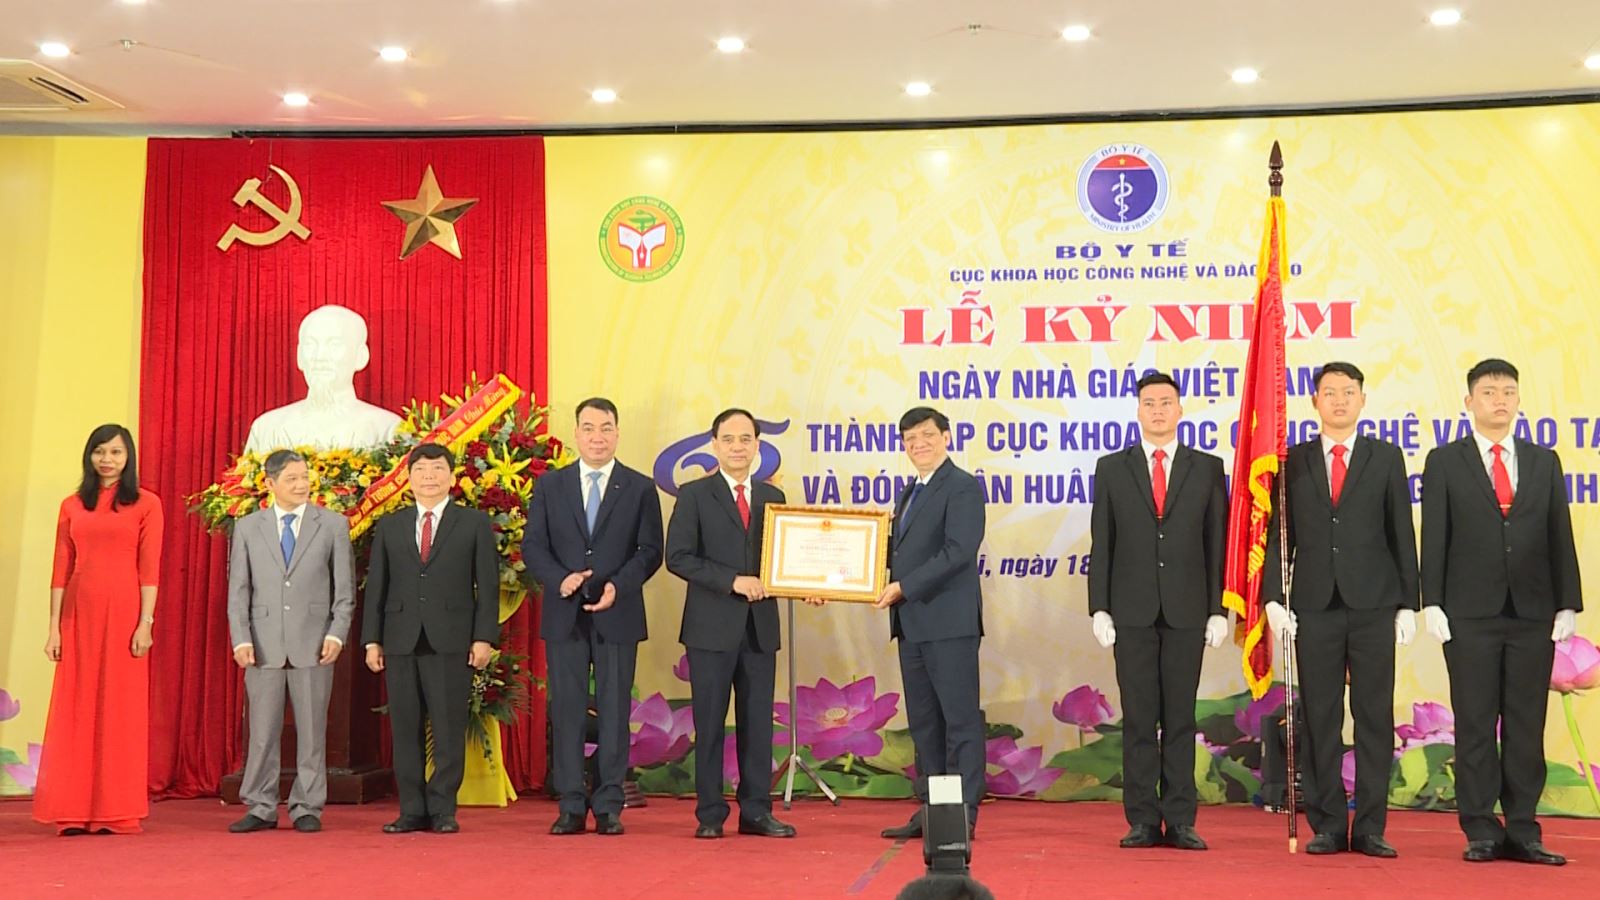 Cục Khoa học Công nghệ và Đào tạo Bộ Y tế tổ chức ngày Nhà giáo Việt nam và 65 năm thành lập)